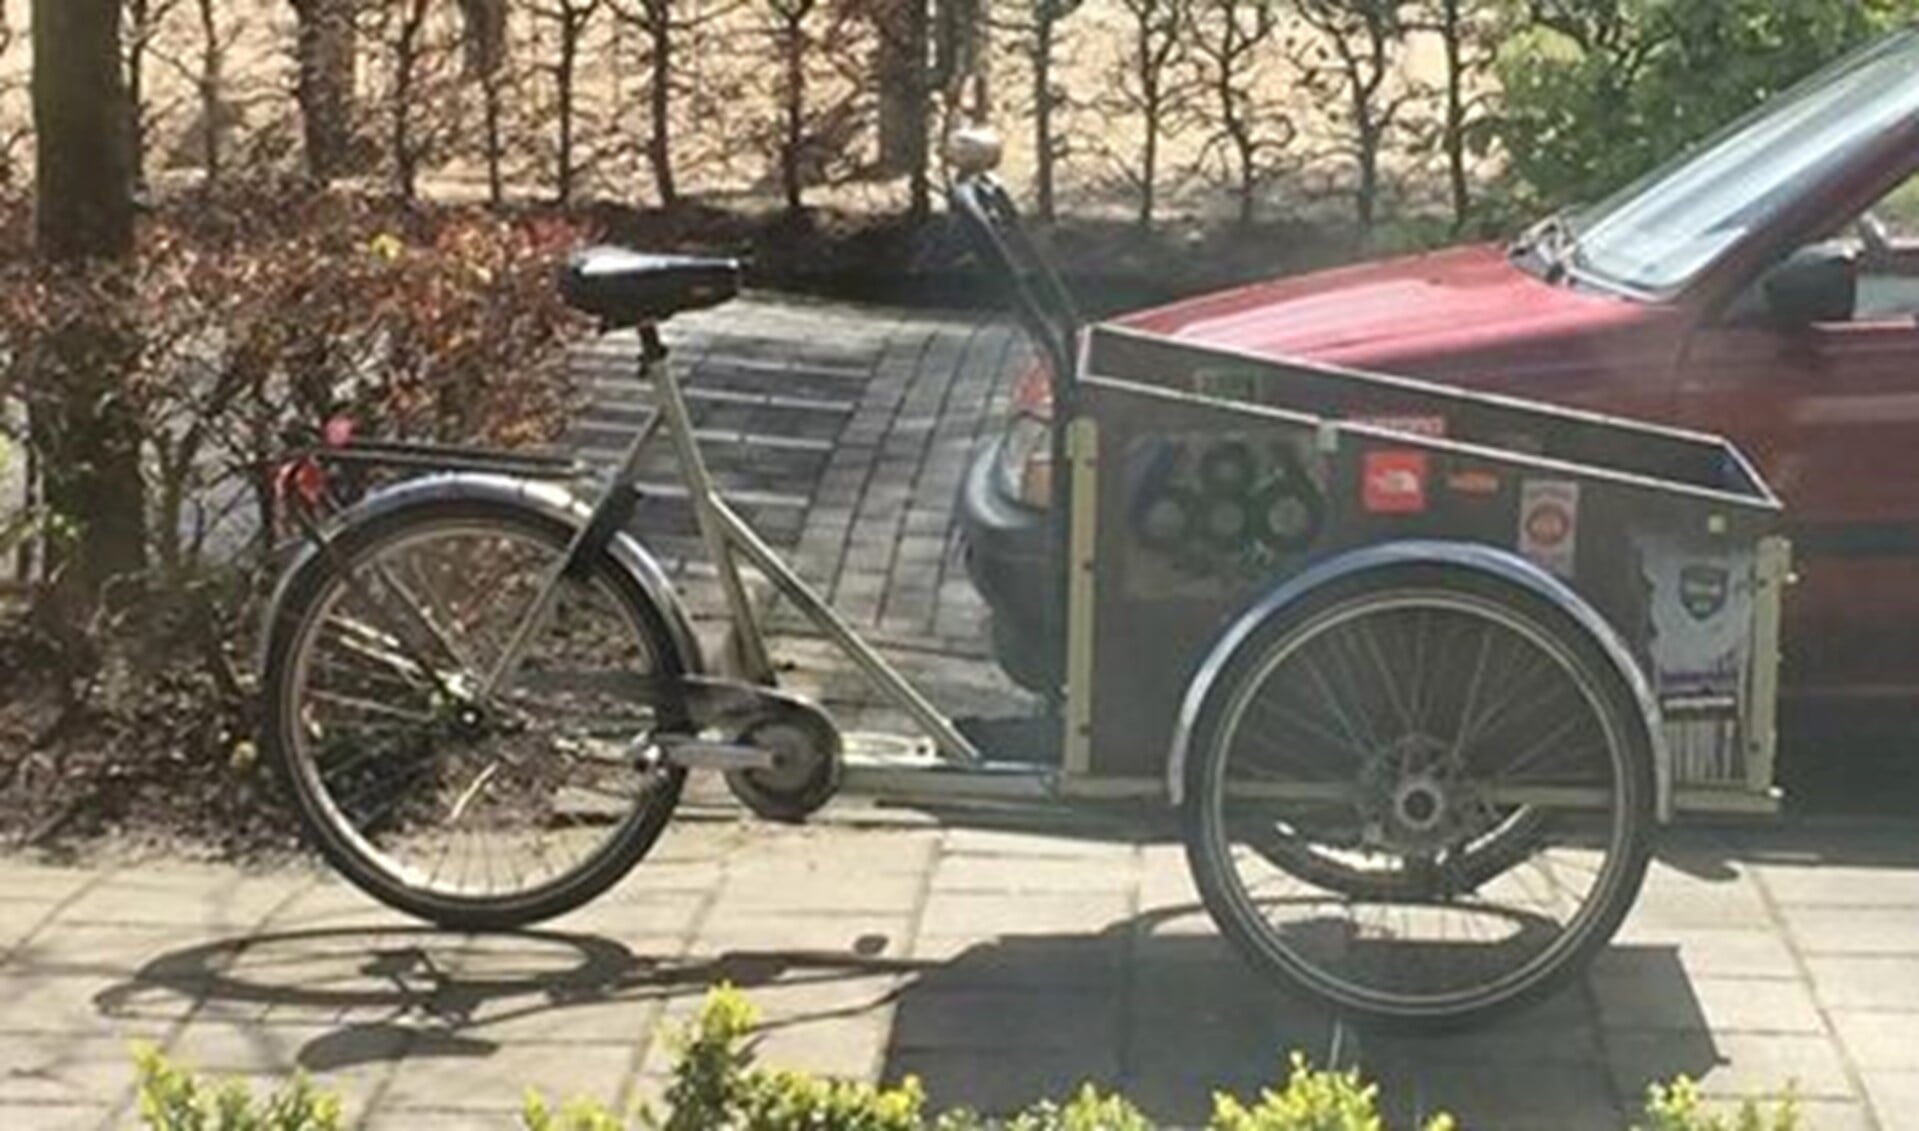 Deze fiets werd afgelopen weekend gestolen.